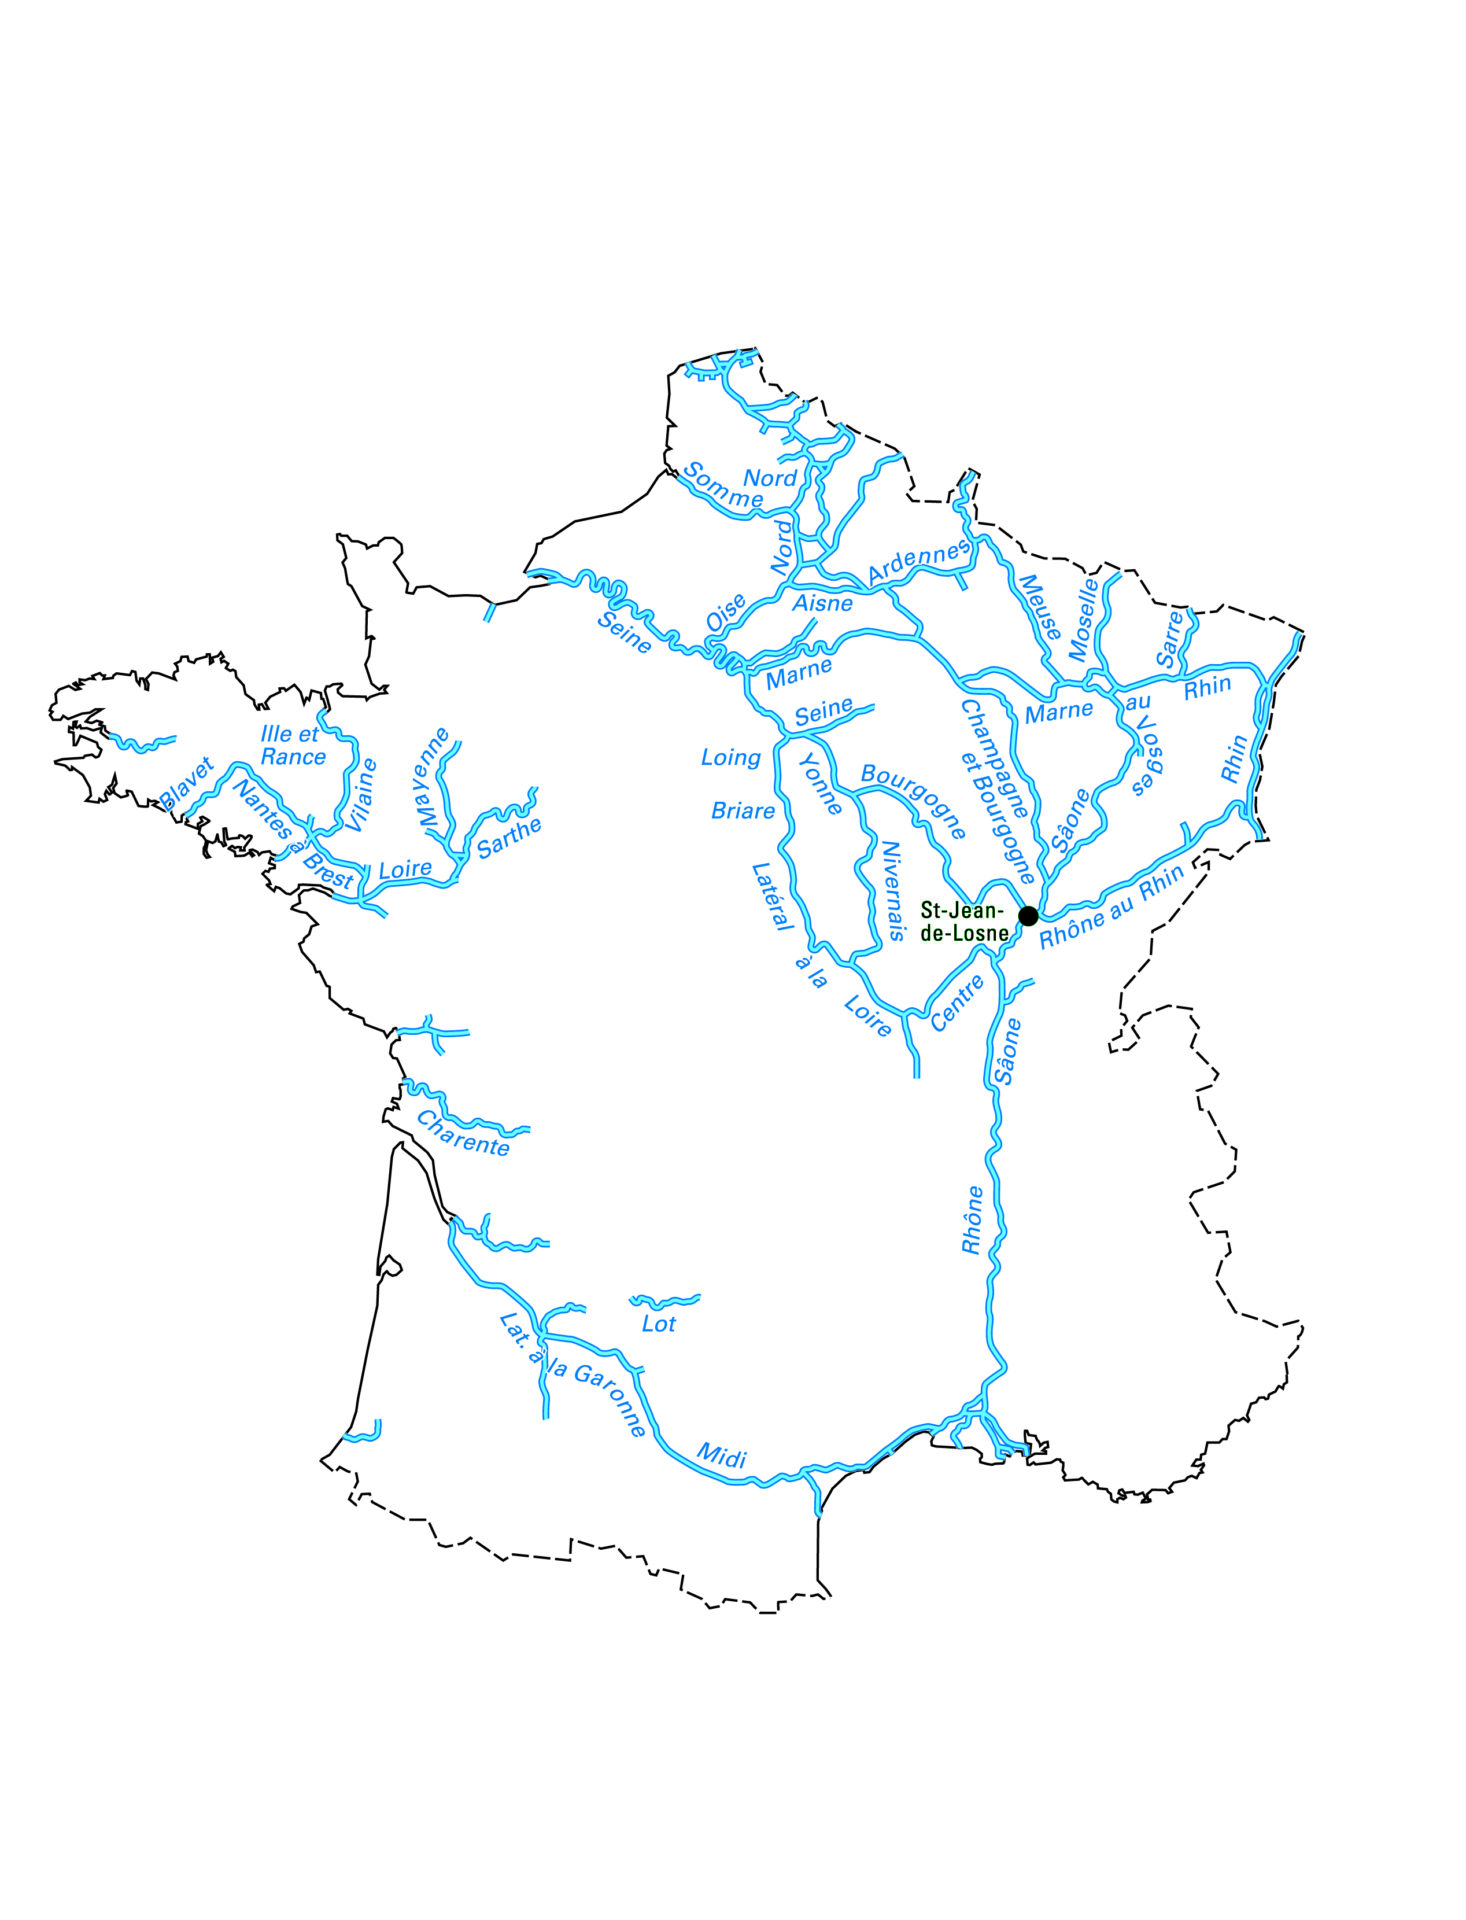 les voies navigables de France